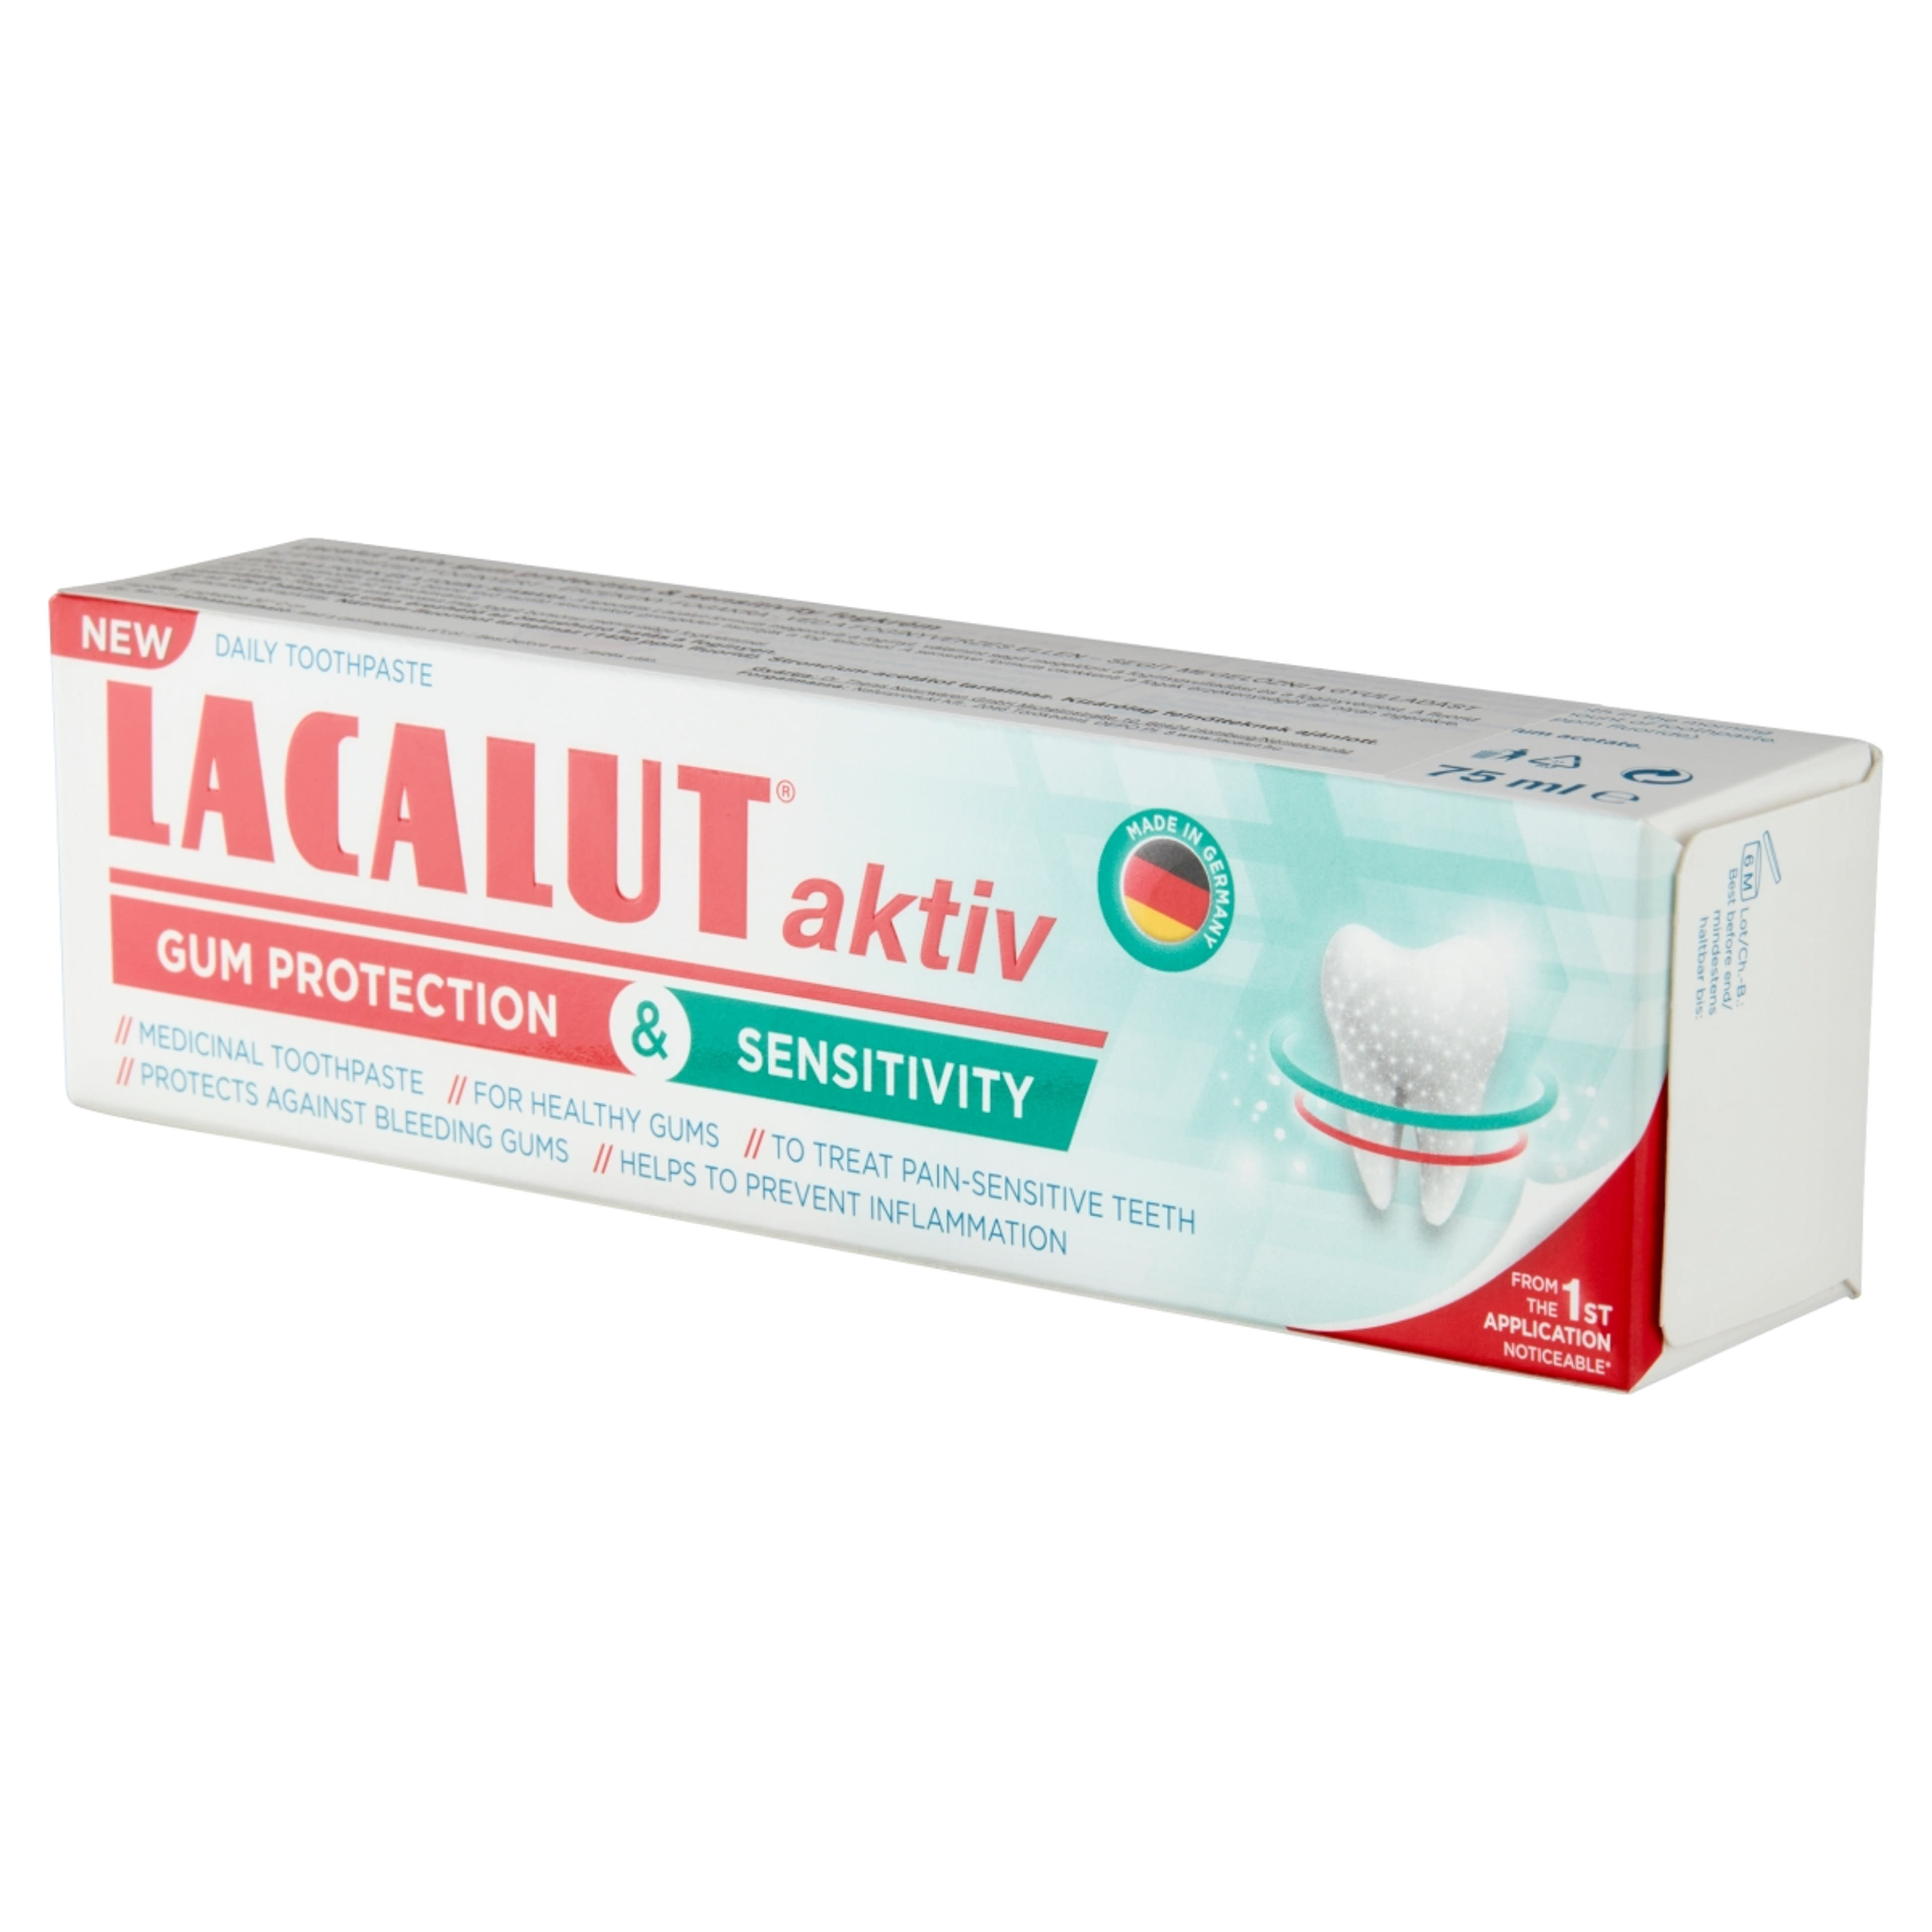 Lacalut Aktiv Gum Protection&Sensitivity fogkrém - 75 ml-3